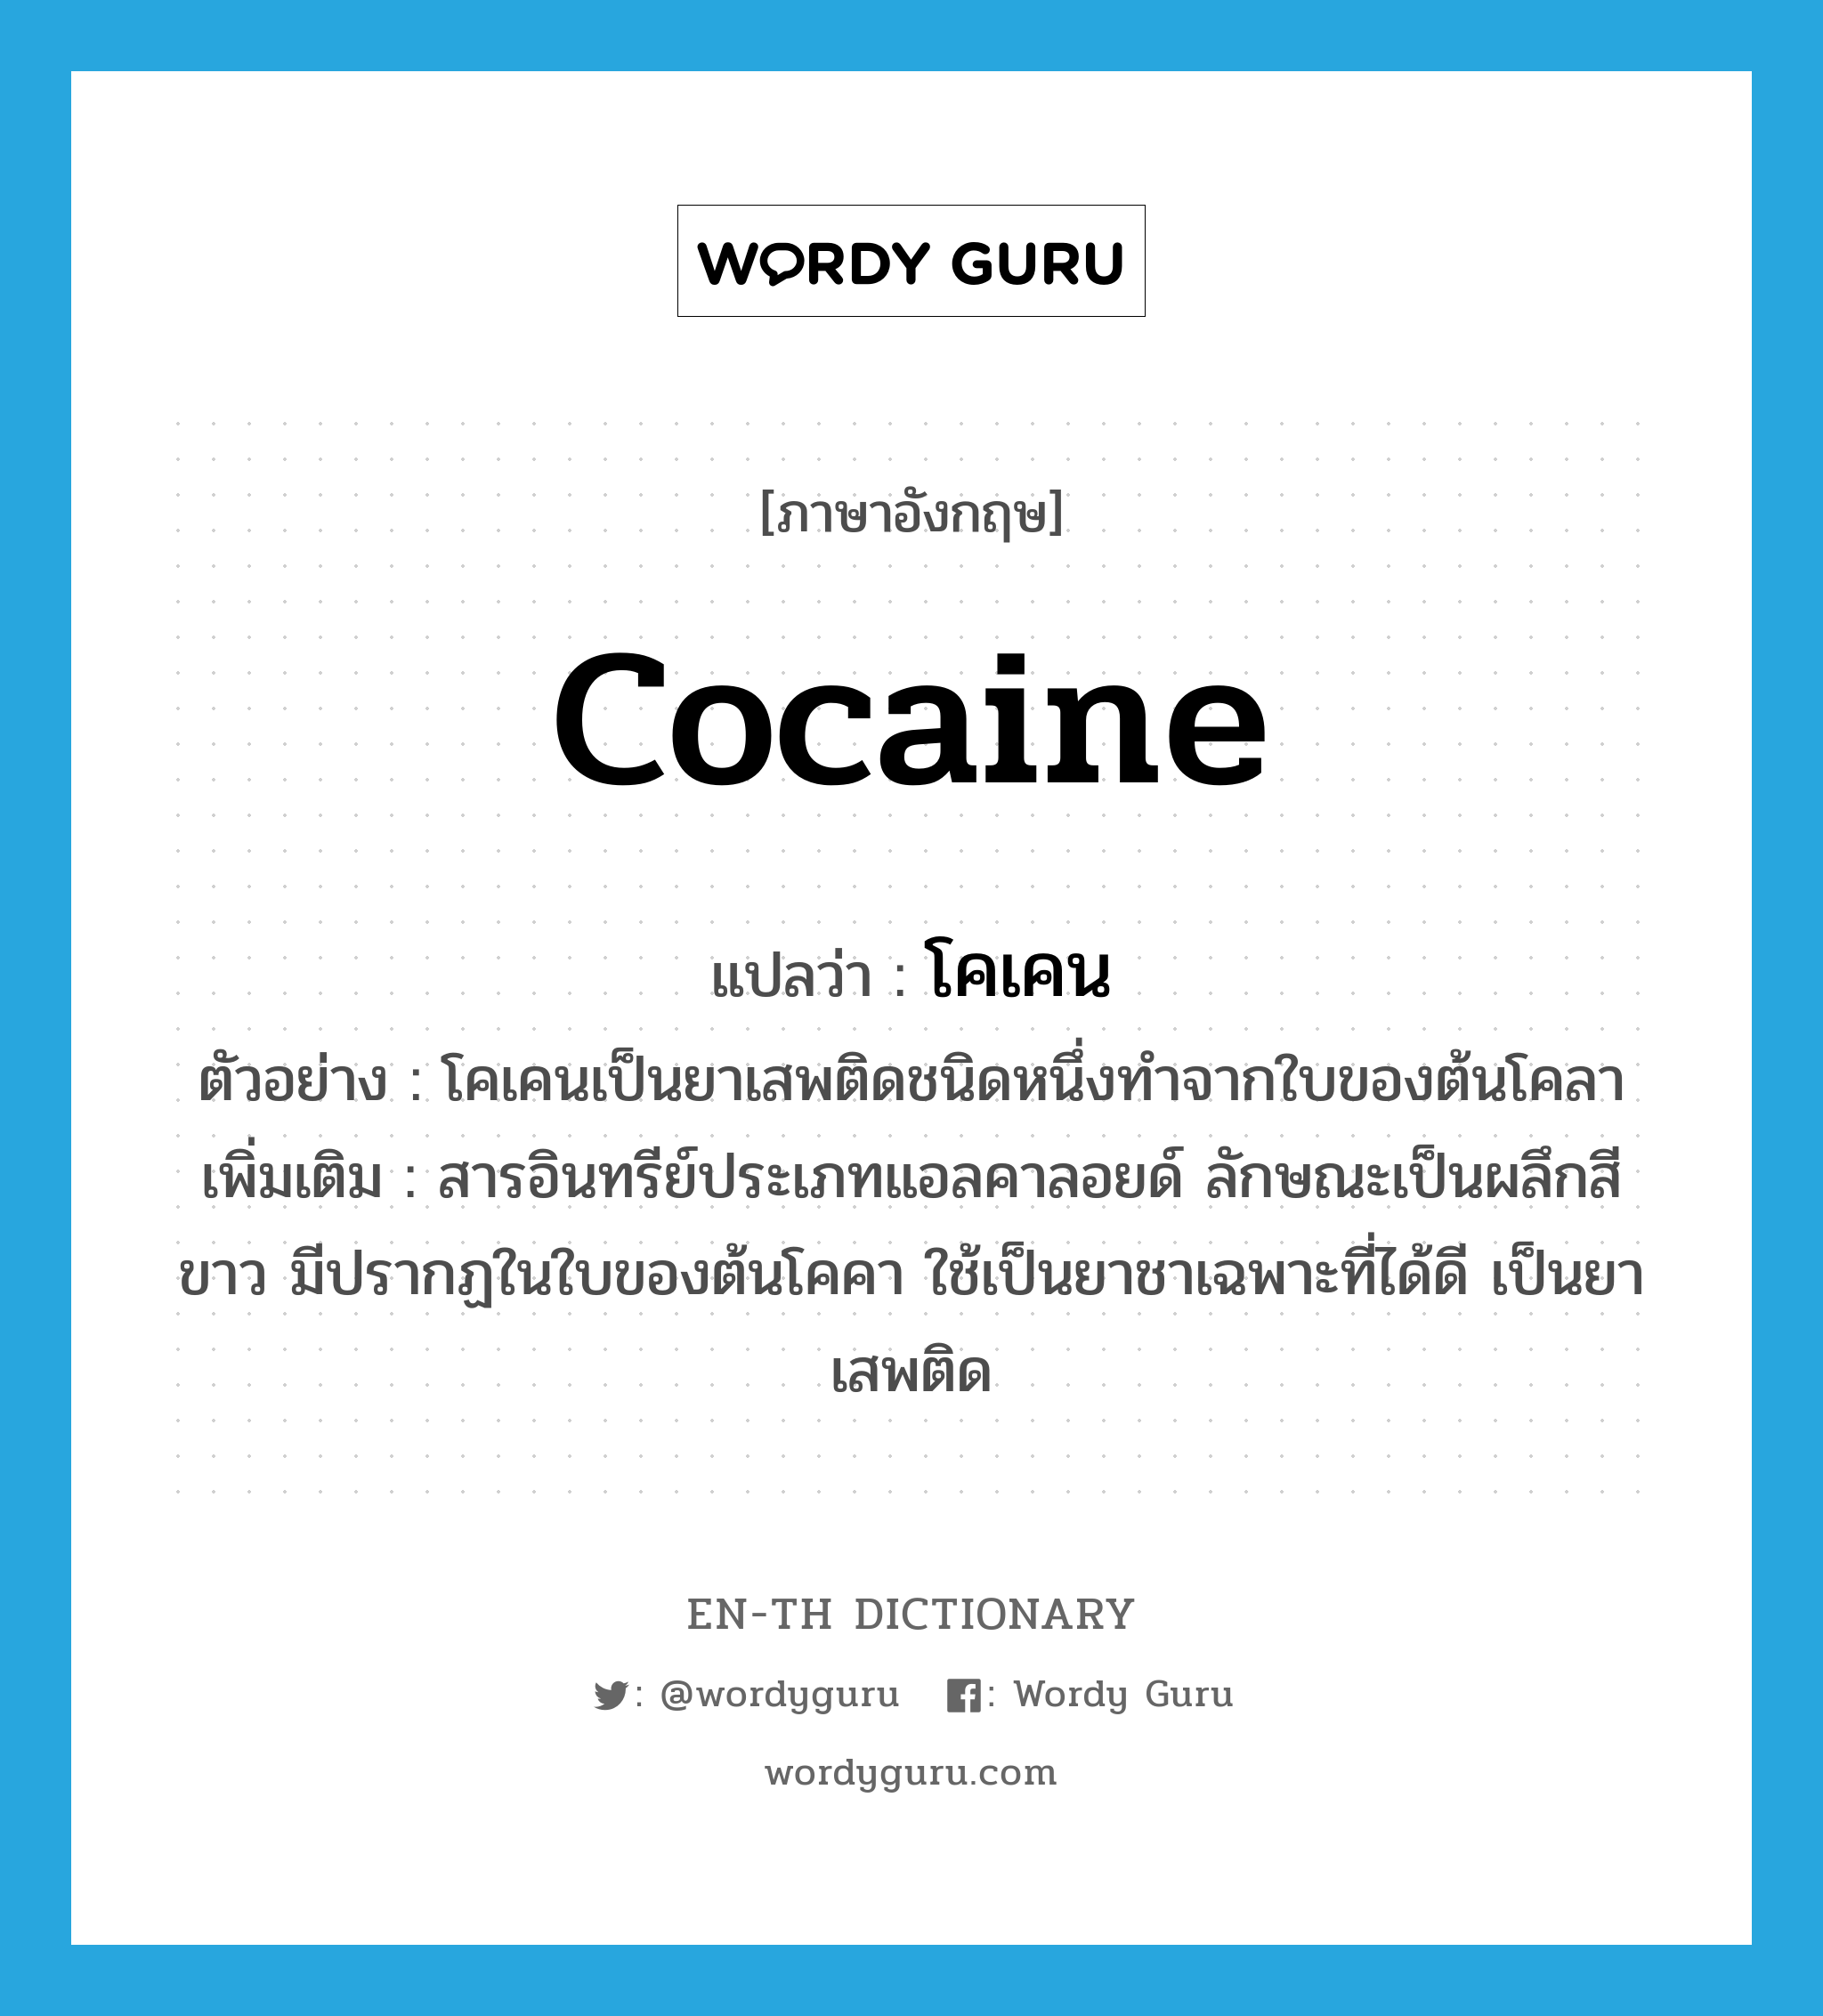 โคเคน ภาษาอังกฤษ?, คำศัพท์ภาษาอังกฤษ โคเคน แปลว่า cocaine ประเภท N ตัวอย่าง โคเคนเป็นยาเสพติดชนิดหนึ่งทำจากใบของต้นโคลา เพิ่มเติม สารอินทรีย์ประเภทแอลคาลอยด์ ลักษณะเป็นผลึกสีขาว มีปรากฏในใบของต้นโคคา ใช้เป็นยาชาเฉพาะที่ได้ดี เป็นยาเสพติด หมวด N